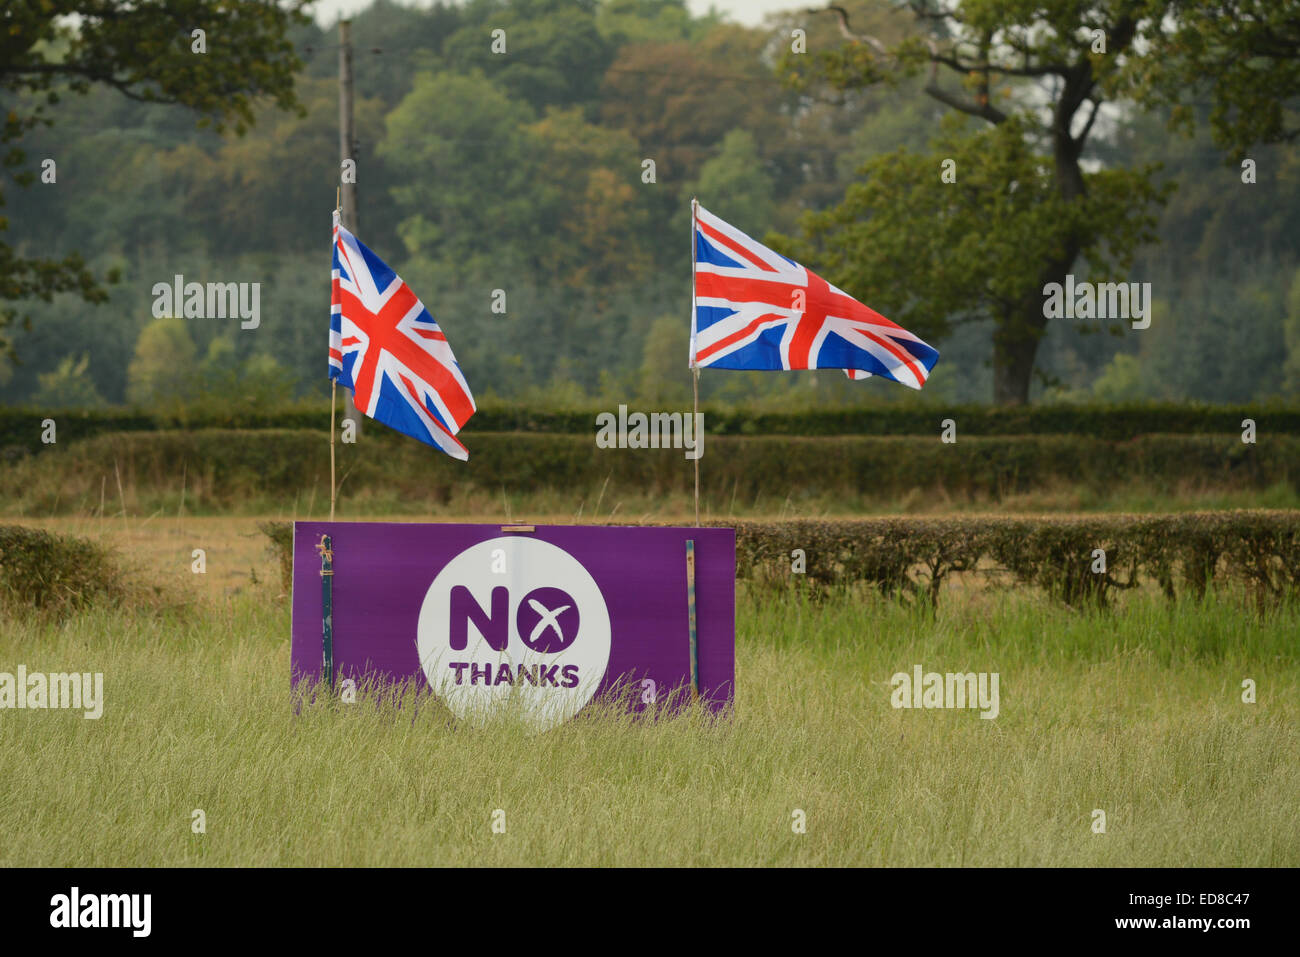 Schottische Unabhängigkeit - lila "Nein Danke" schottischen Unabhängigkeitsreferendum Zeichen verziert mit Union Jack-Flaggen in Stirlingshire Bereich 2014 Stockfoto